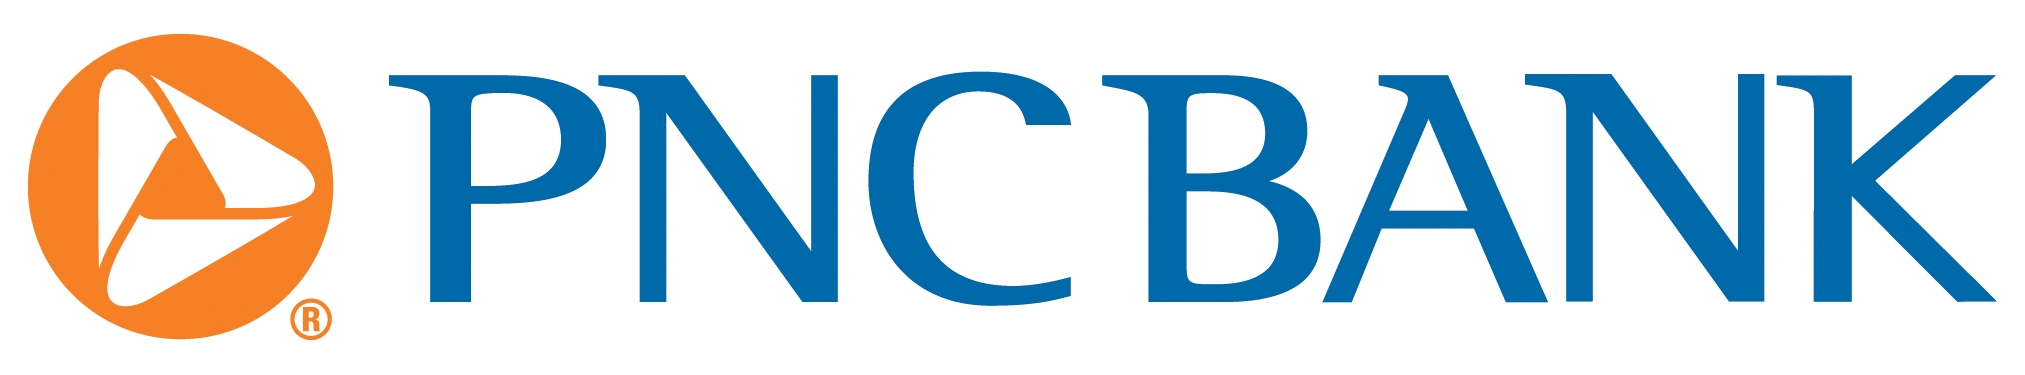 PNC_Bank_logo